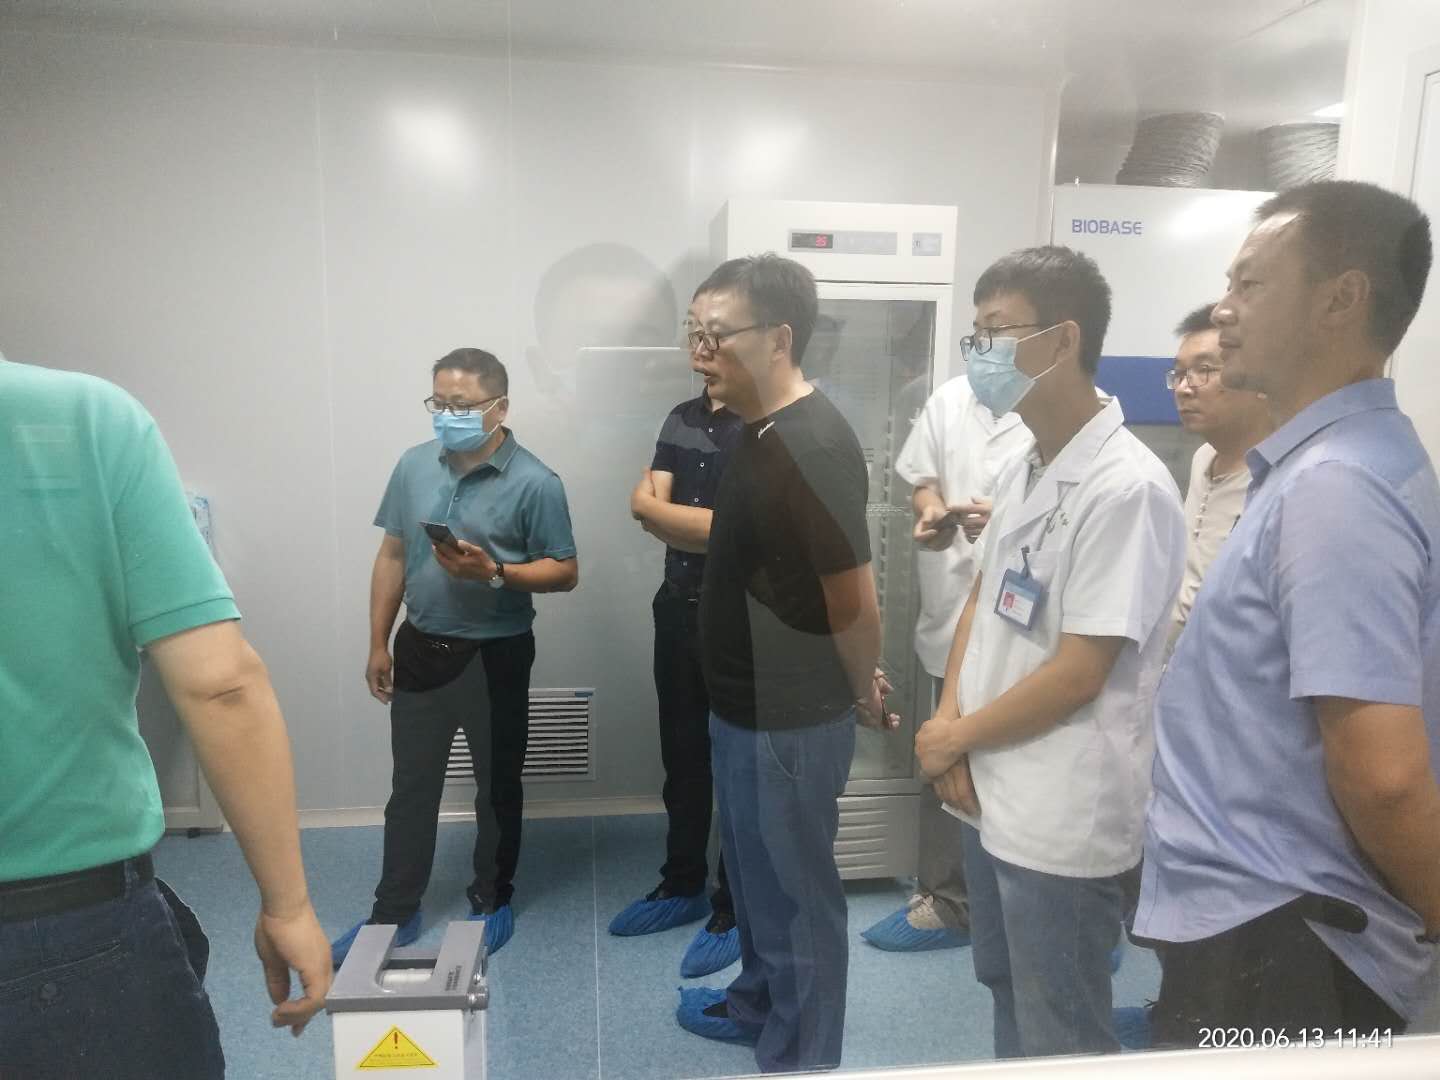 热烈祝贺我司顺利通过安徽省石台县人民医院核酸检测实验室的竣工验收